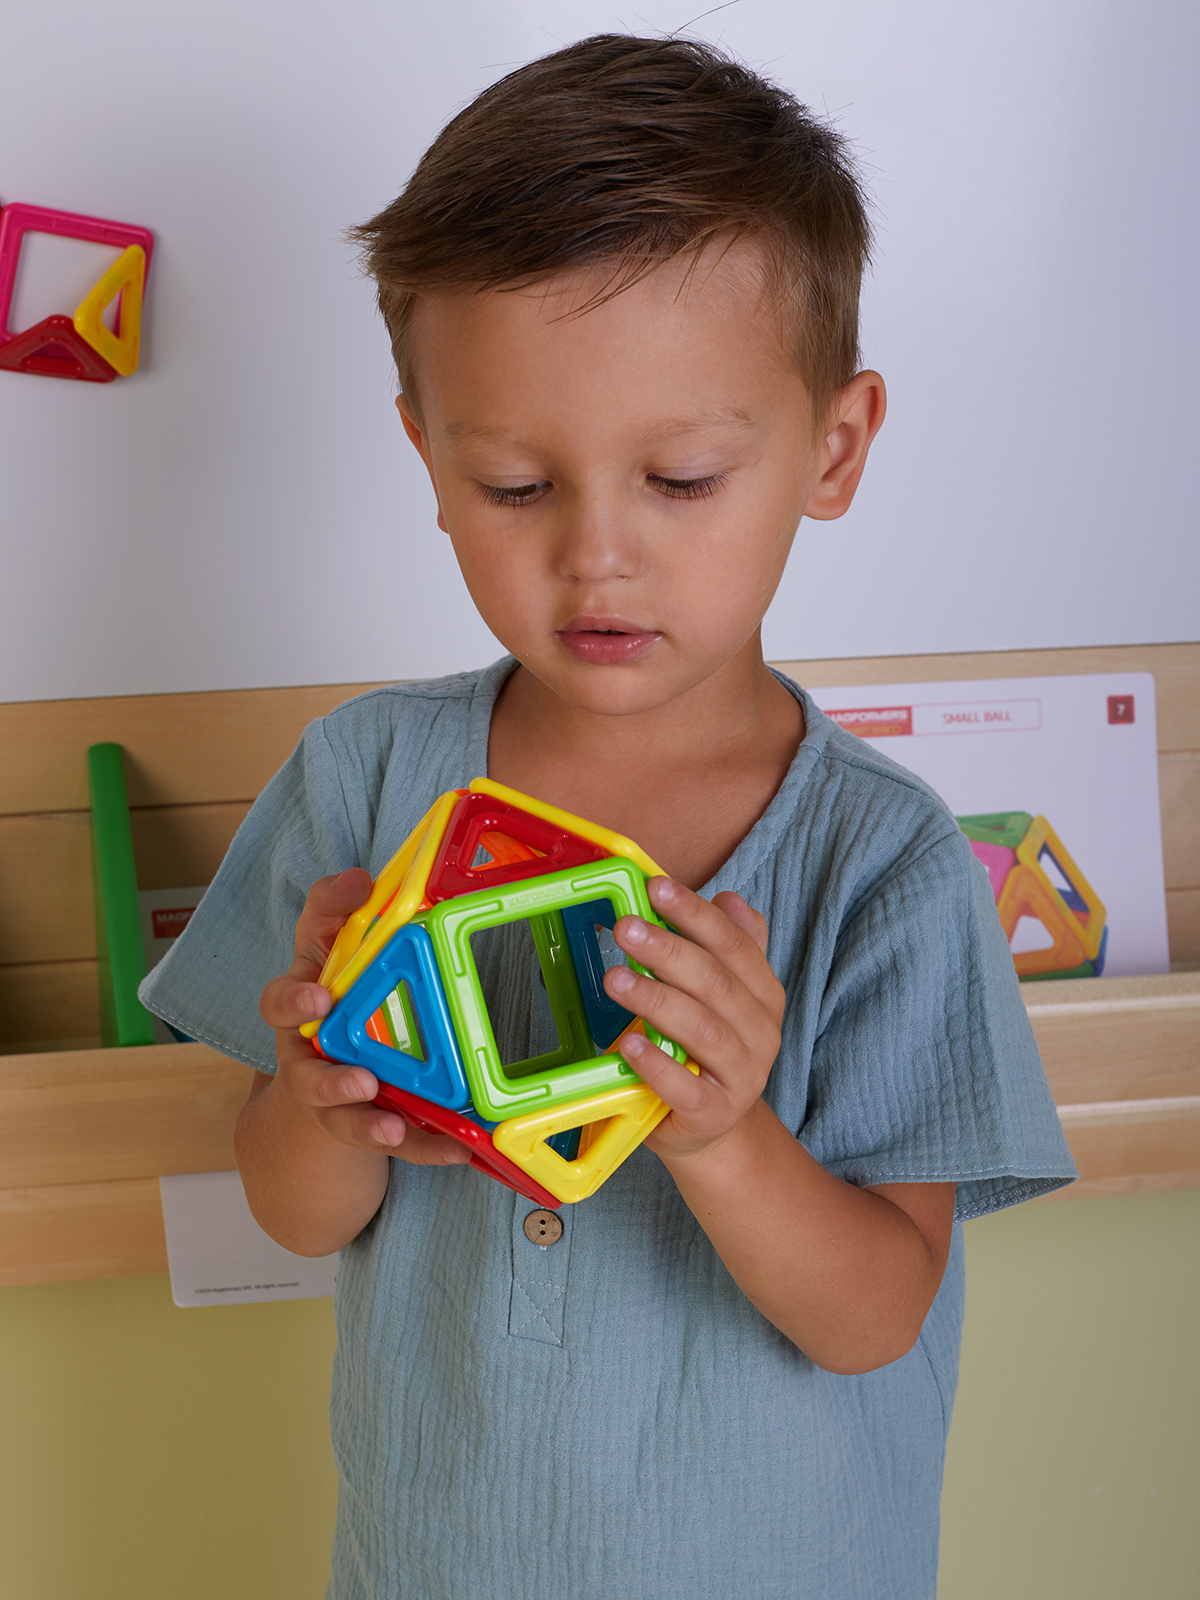 УМК для формирования элементарных математических представлений и развития математических компетенций детей 3-4 лет / 4 комплекта в системе хранения Игротека